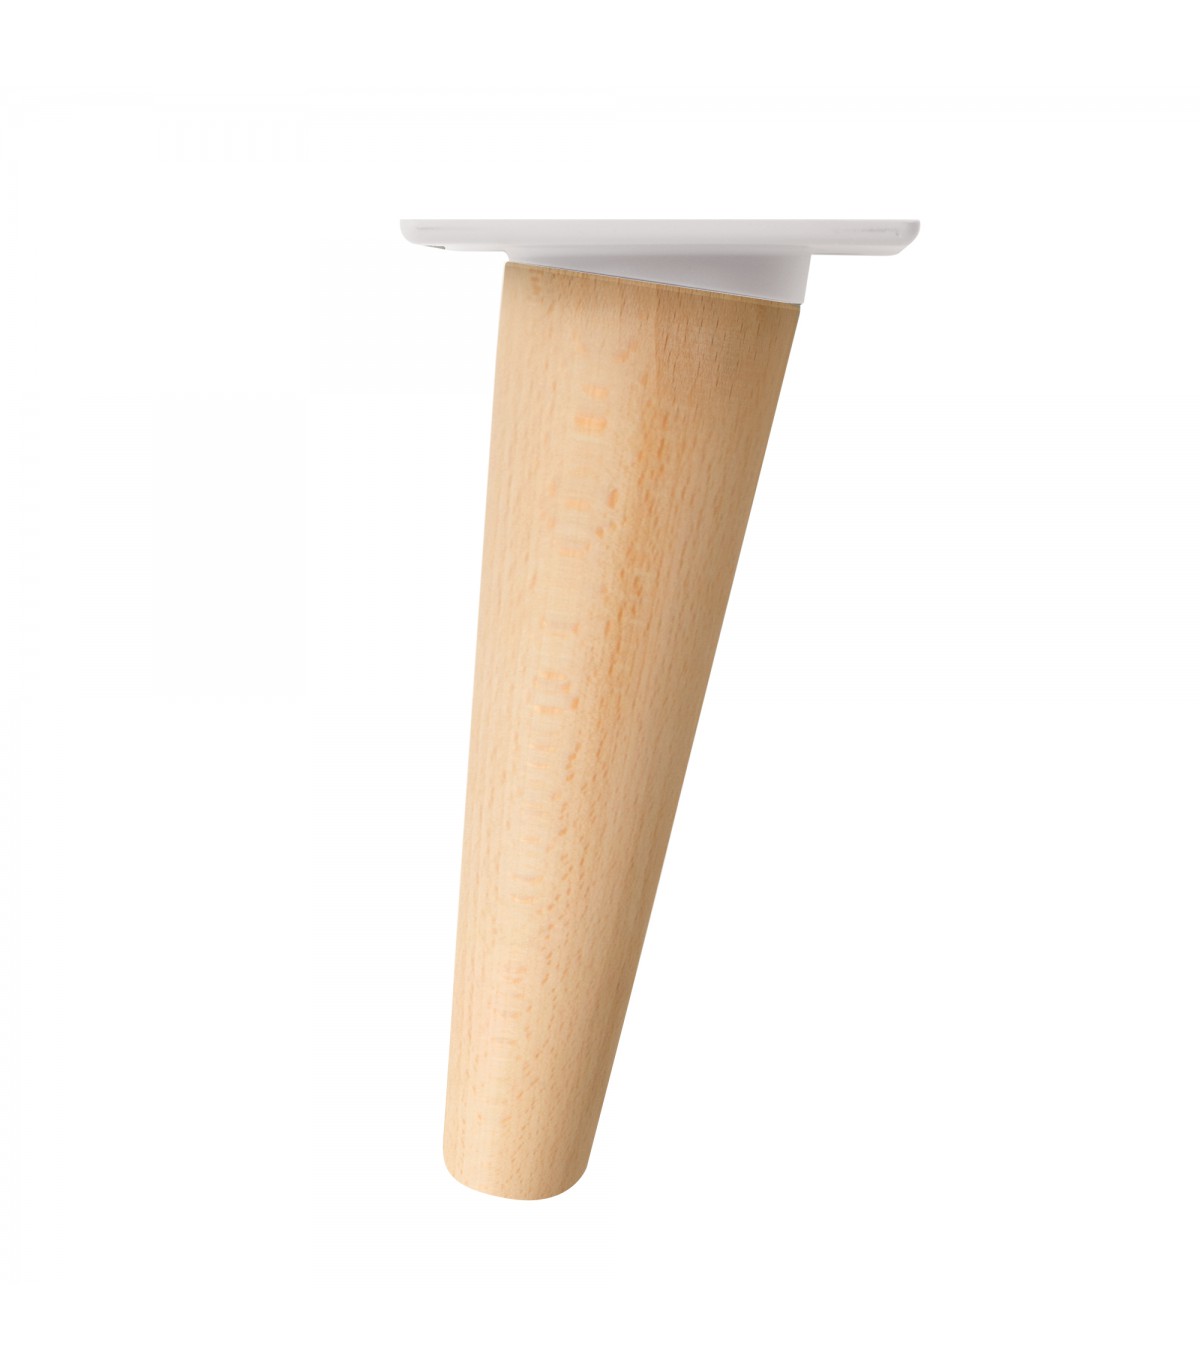 X5 ronde en bois de bases en hêtre pour pied Figure 54-75 mm 